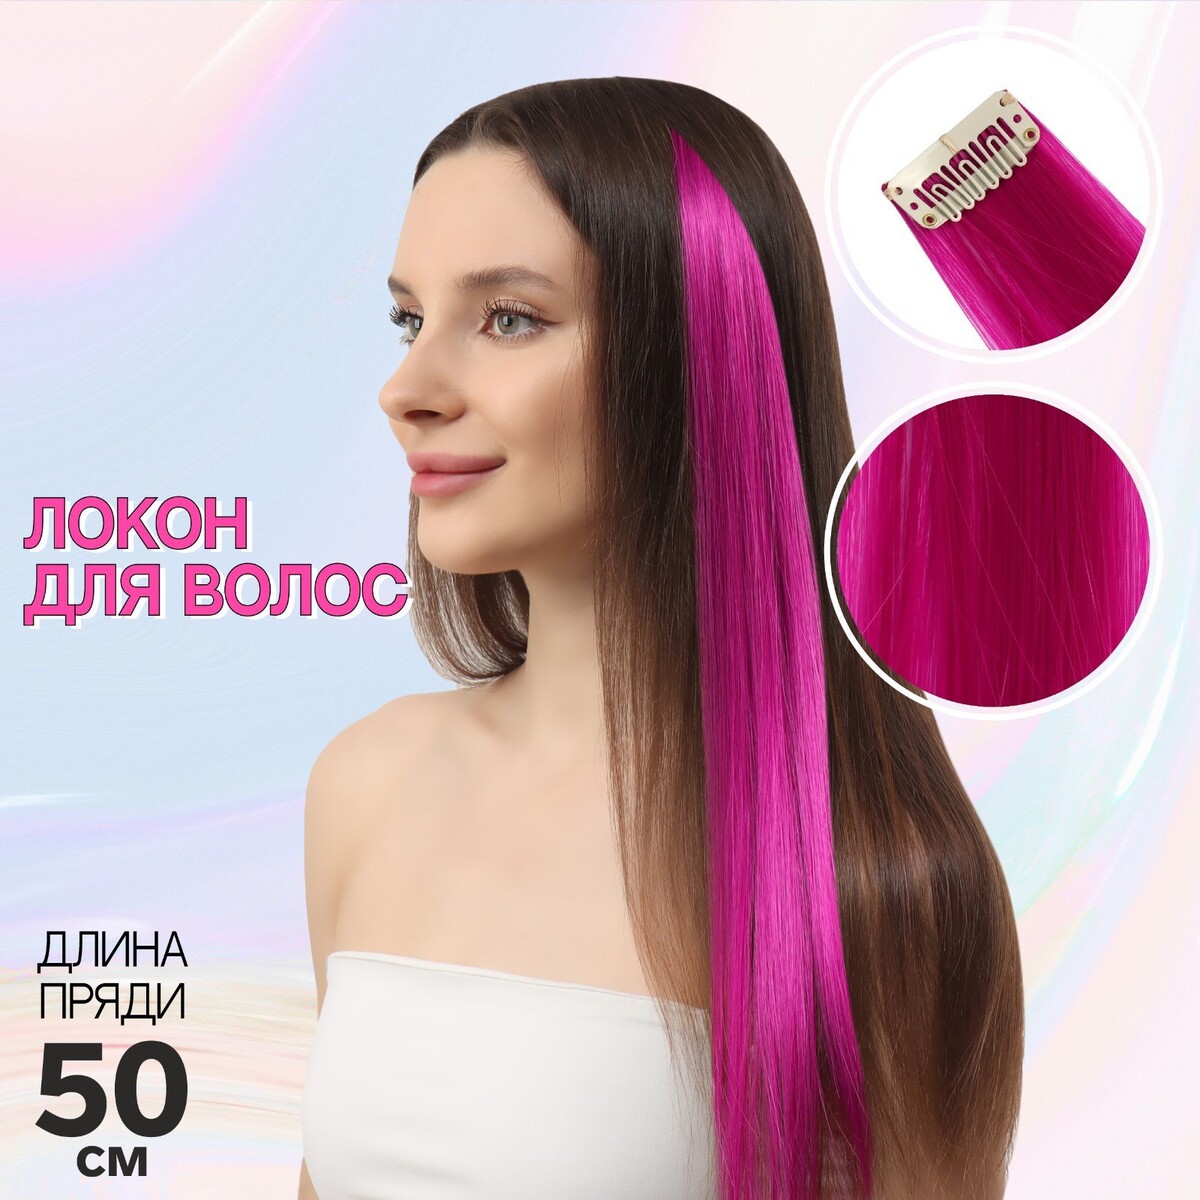 Локон накладной, прямой волос, на заколке, 50 см, 5 гр, цвет фиолетовый локон накладной бантик прямой волос на заколке 32 см микс